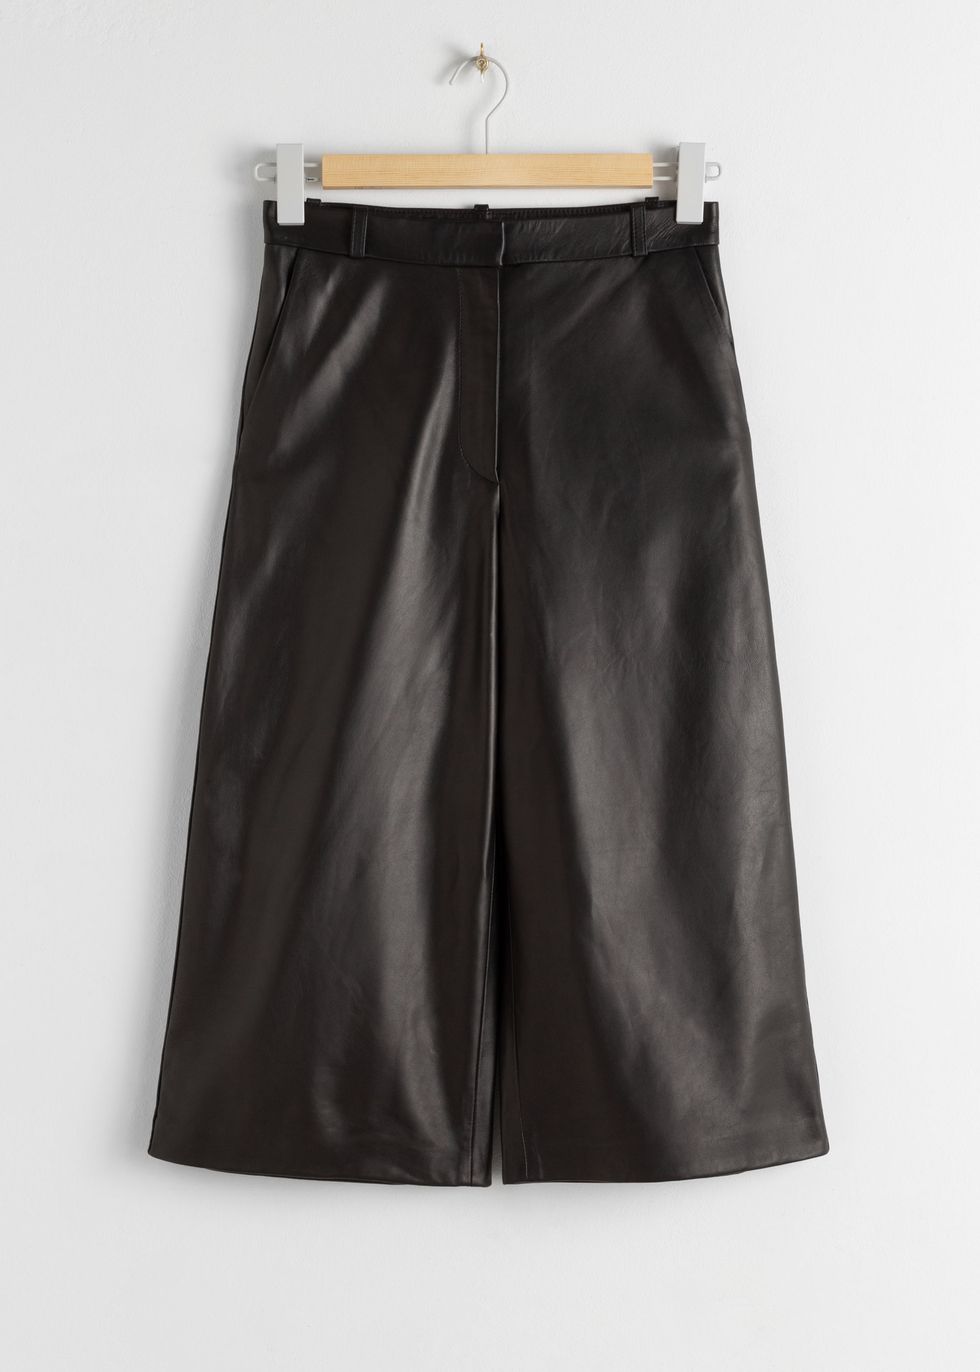 leather shorts - long leather shorts